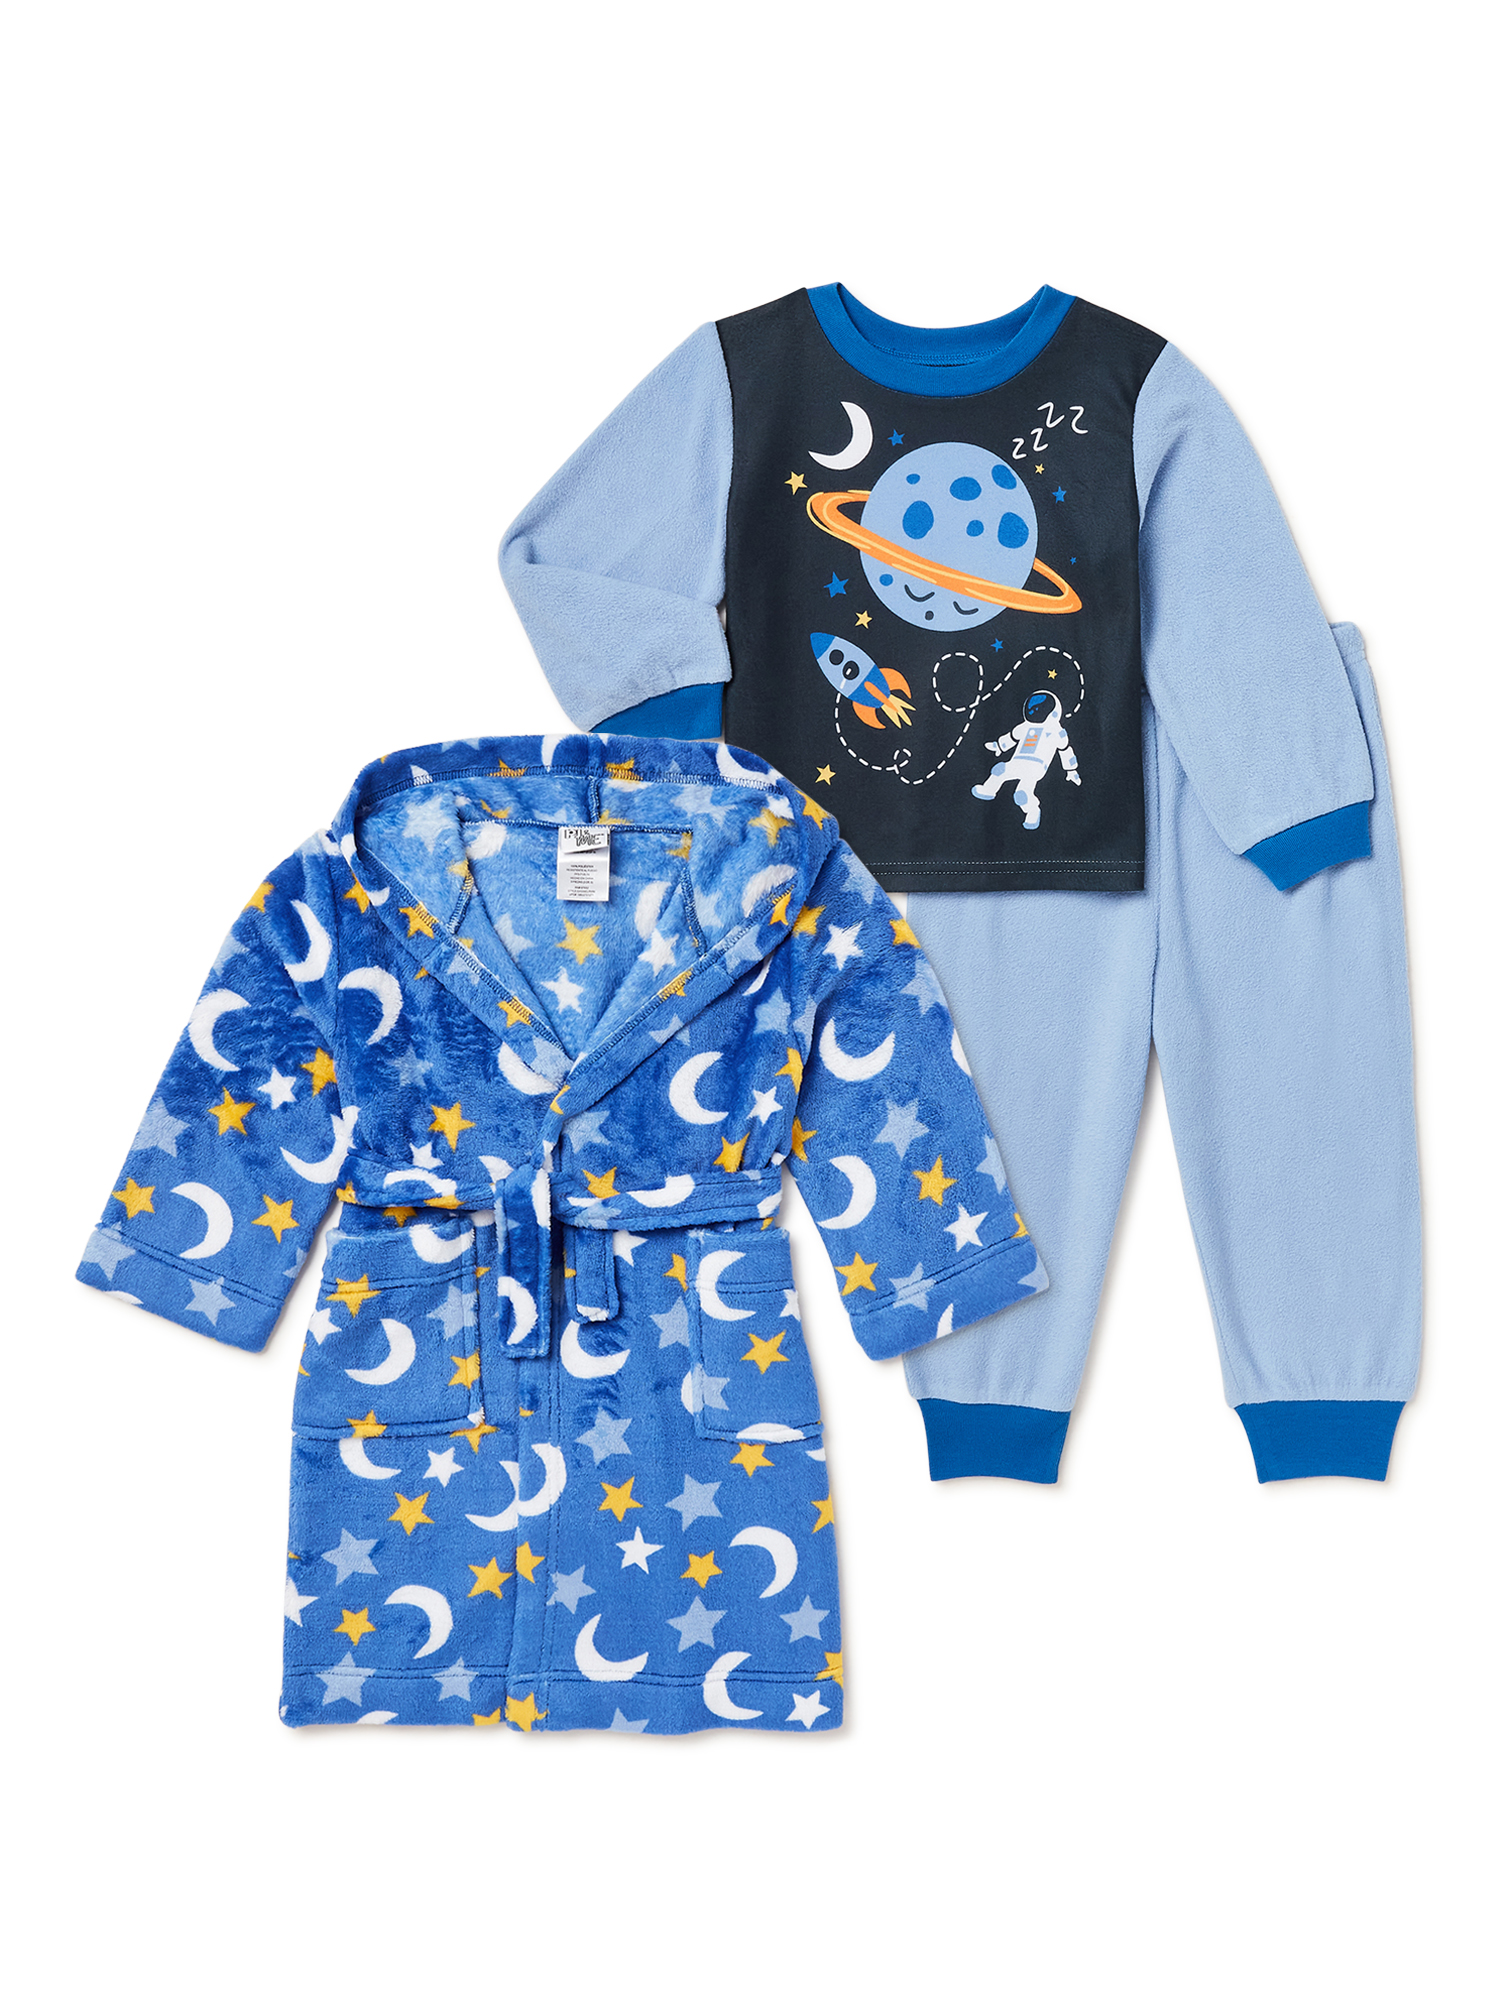 PJ & Me Toddler Boys' Pajama and Robe Set, 3-Piece - image 1 of 3